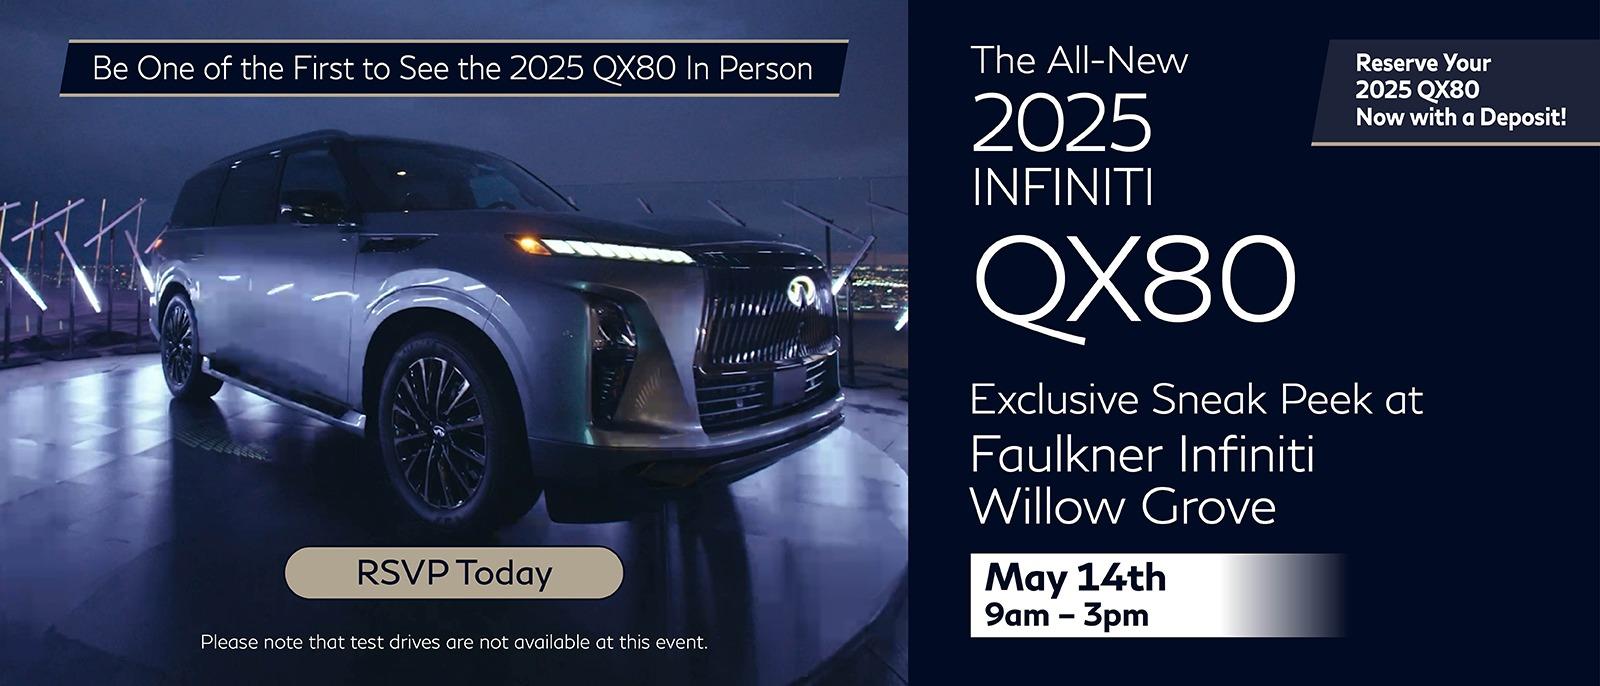 The All-New 2025 INFINITI QX80